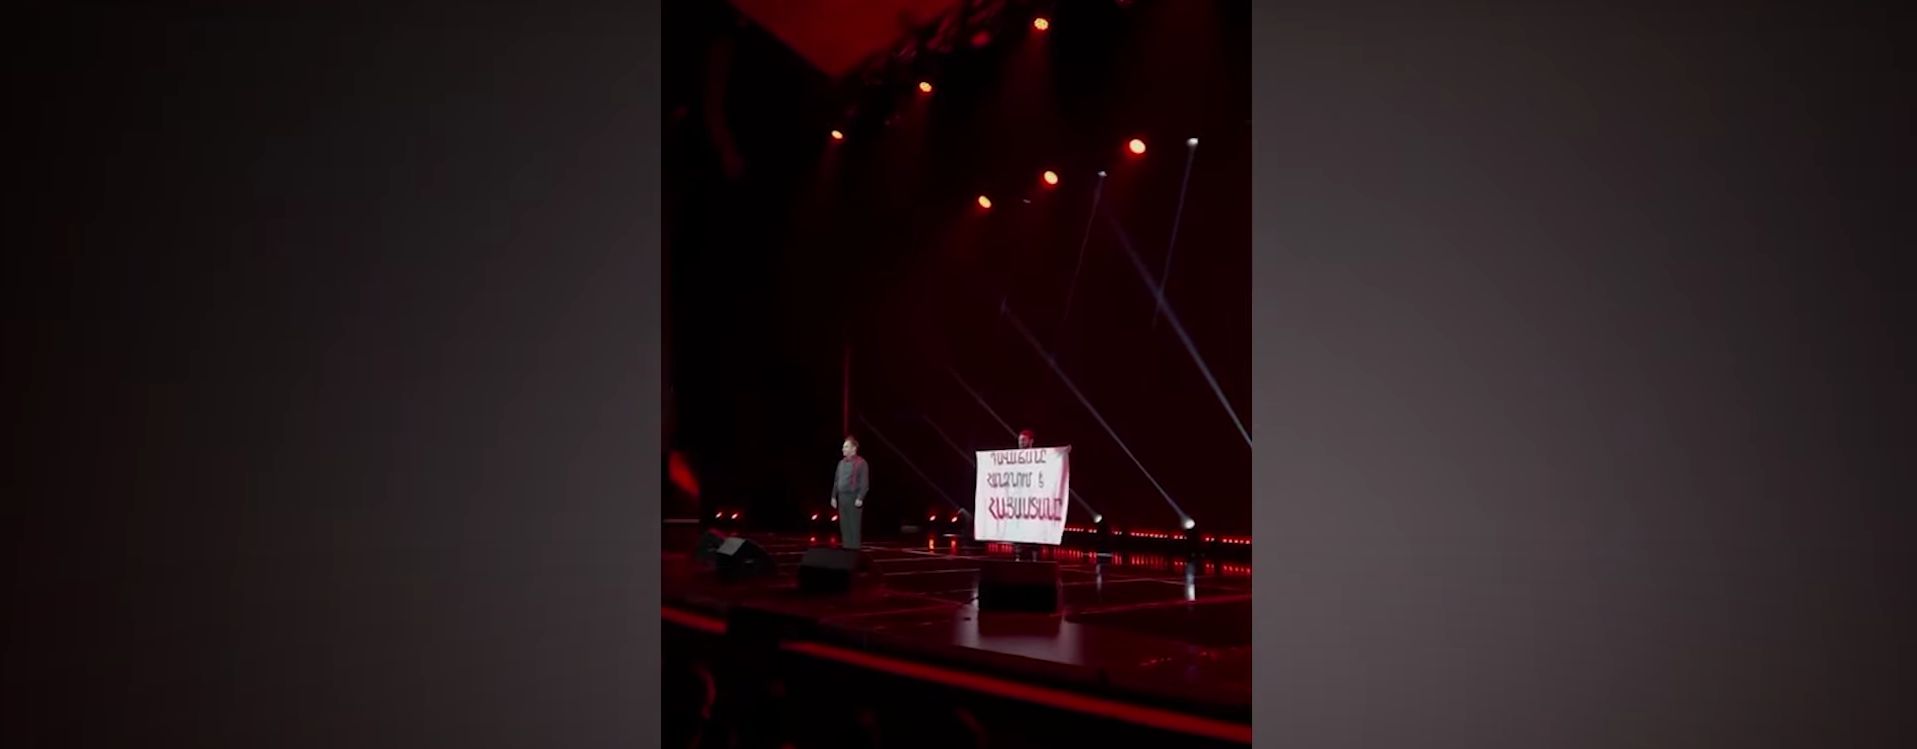 Երիտասարդները Հովհաննես Դավթյանի ներկայացման ժամանակ բեմում պարզել են «Դավաճանը հանձնում է Հայաստանը» գրությամբ պաստառ (տեսանյութ)